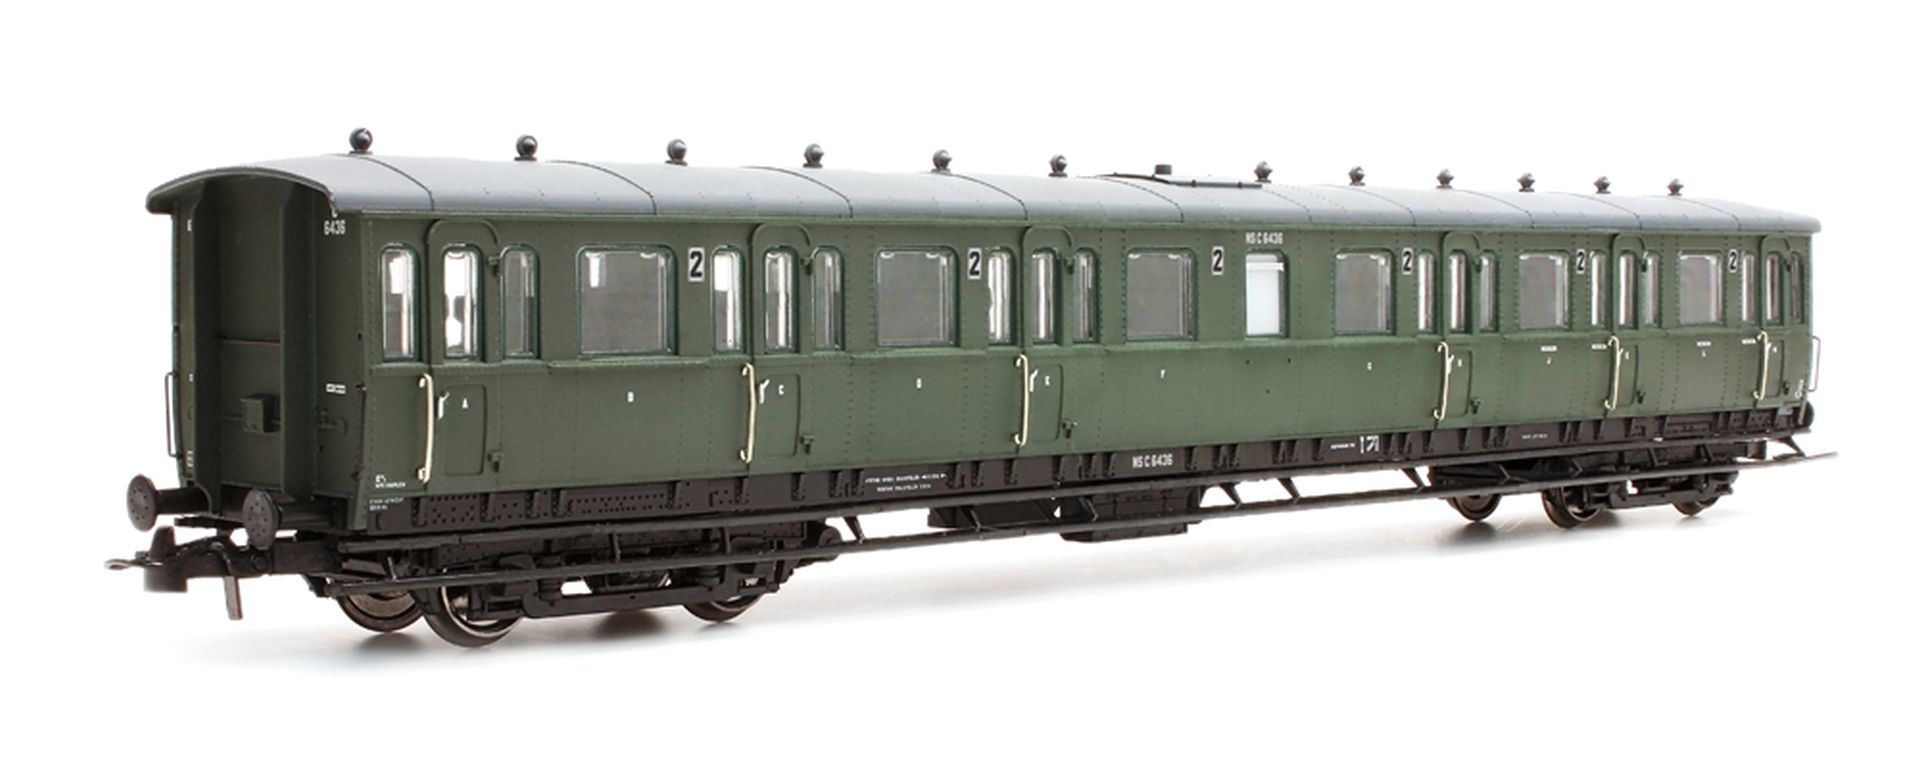 Artitec 20.254.05 - Personenwagen C12c C6436, 2. Klasse, NS, Ep.III